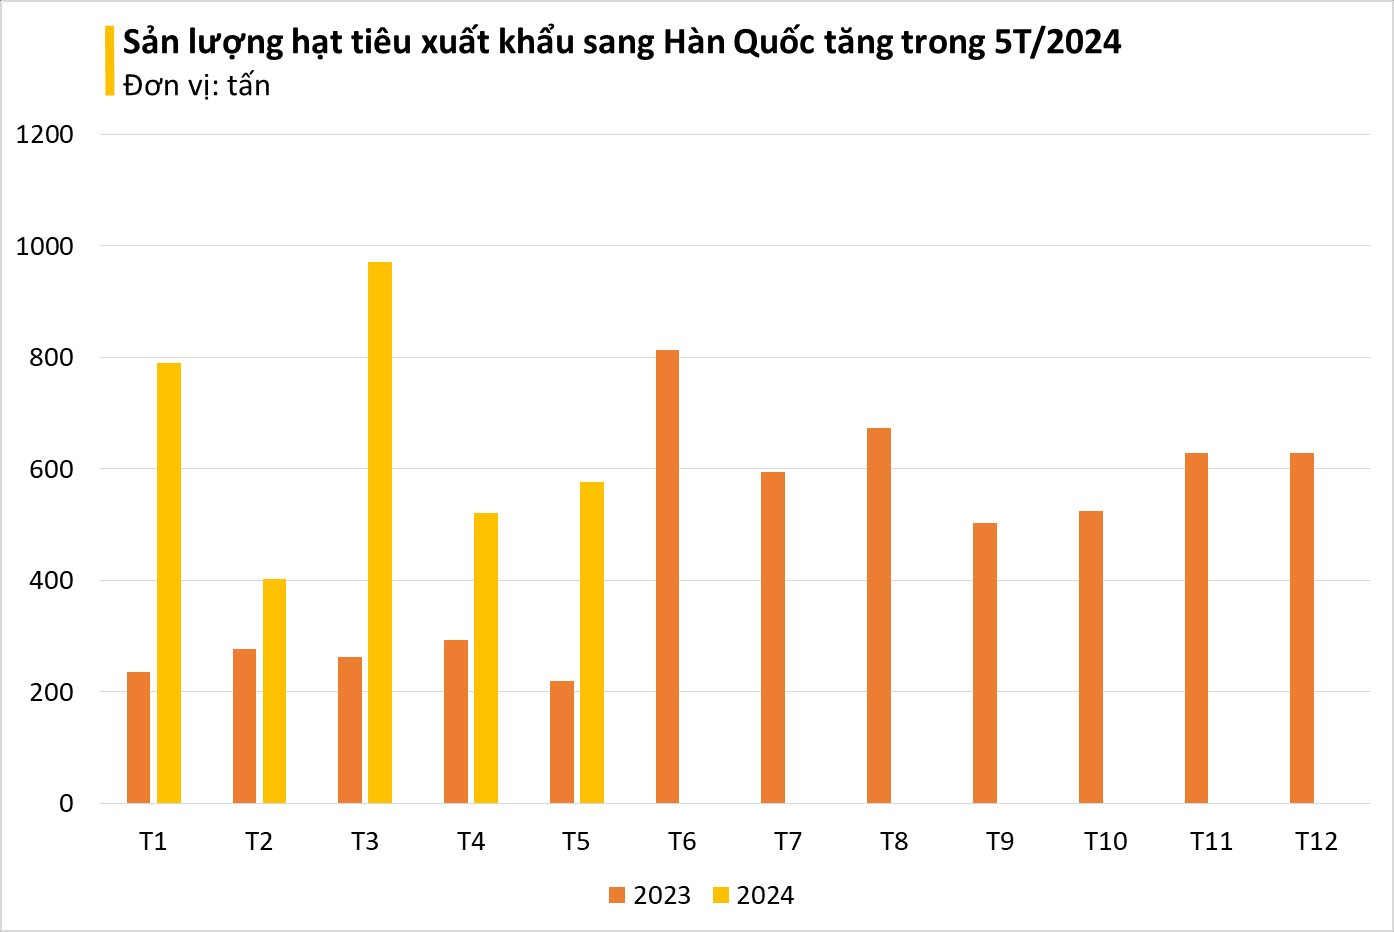 Hàn Quốc bất ngờ tăng mạnh mua hàng nghìn tấn 'vàng trên cây' của Việt Nam: nhập khẩu tăng 3 chữ số, giá trong nước liên tục lập đỉnh- Ảnh 2.